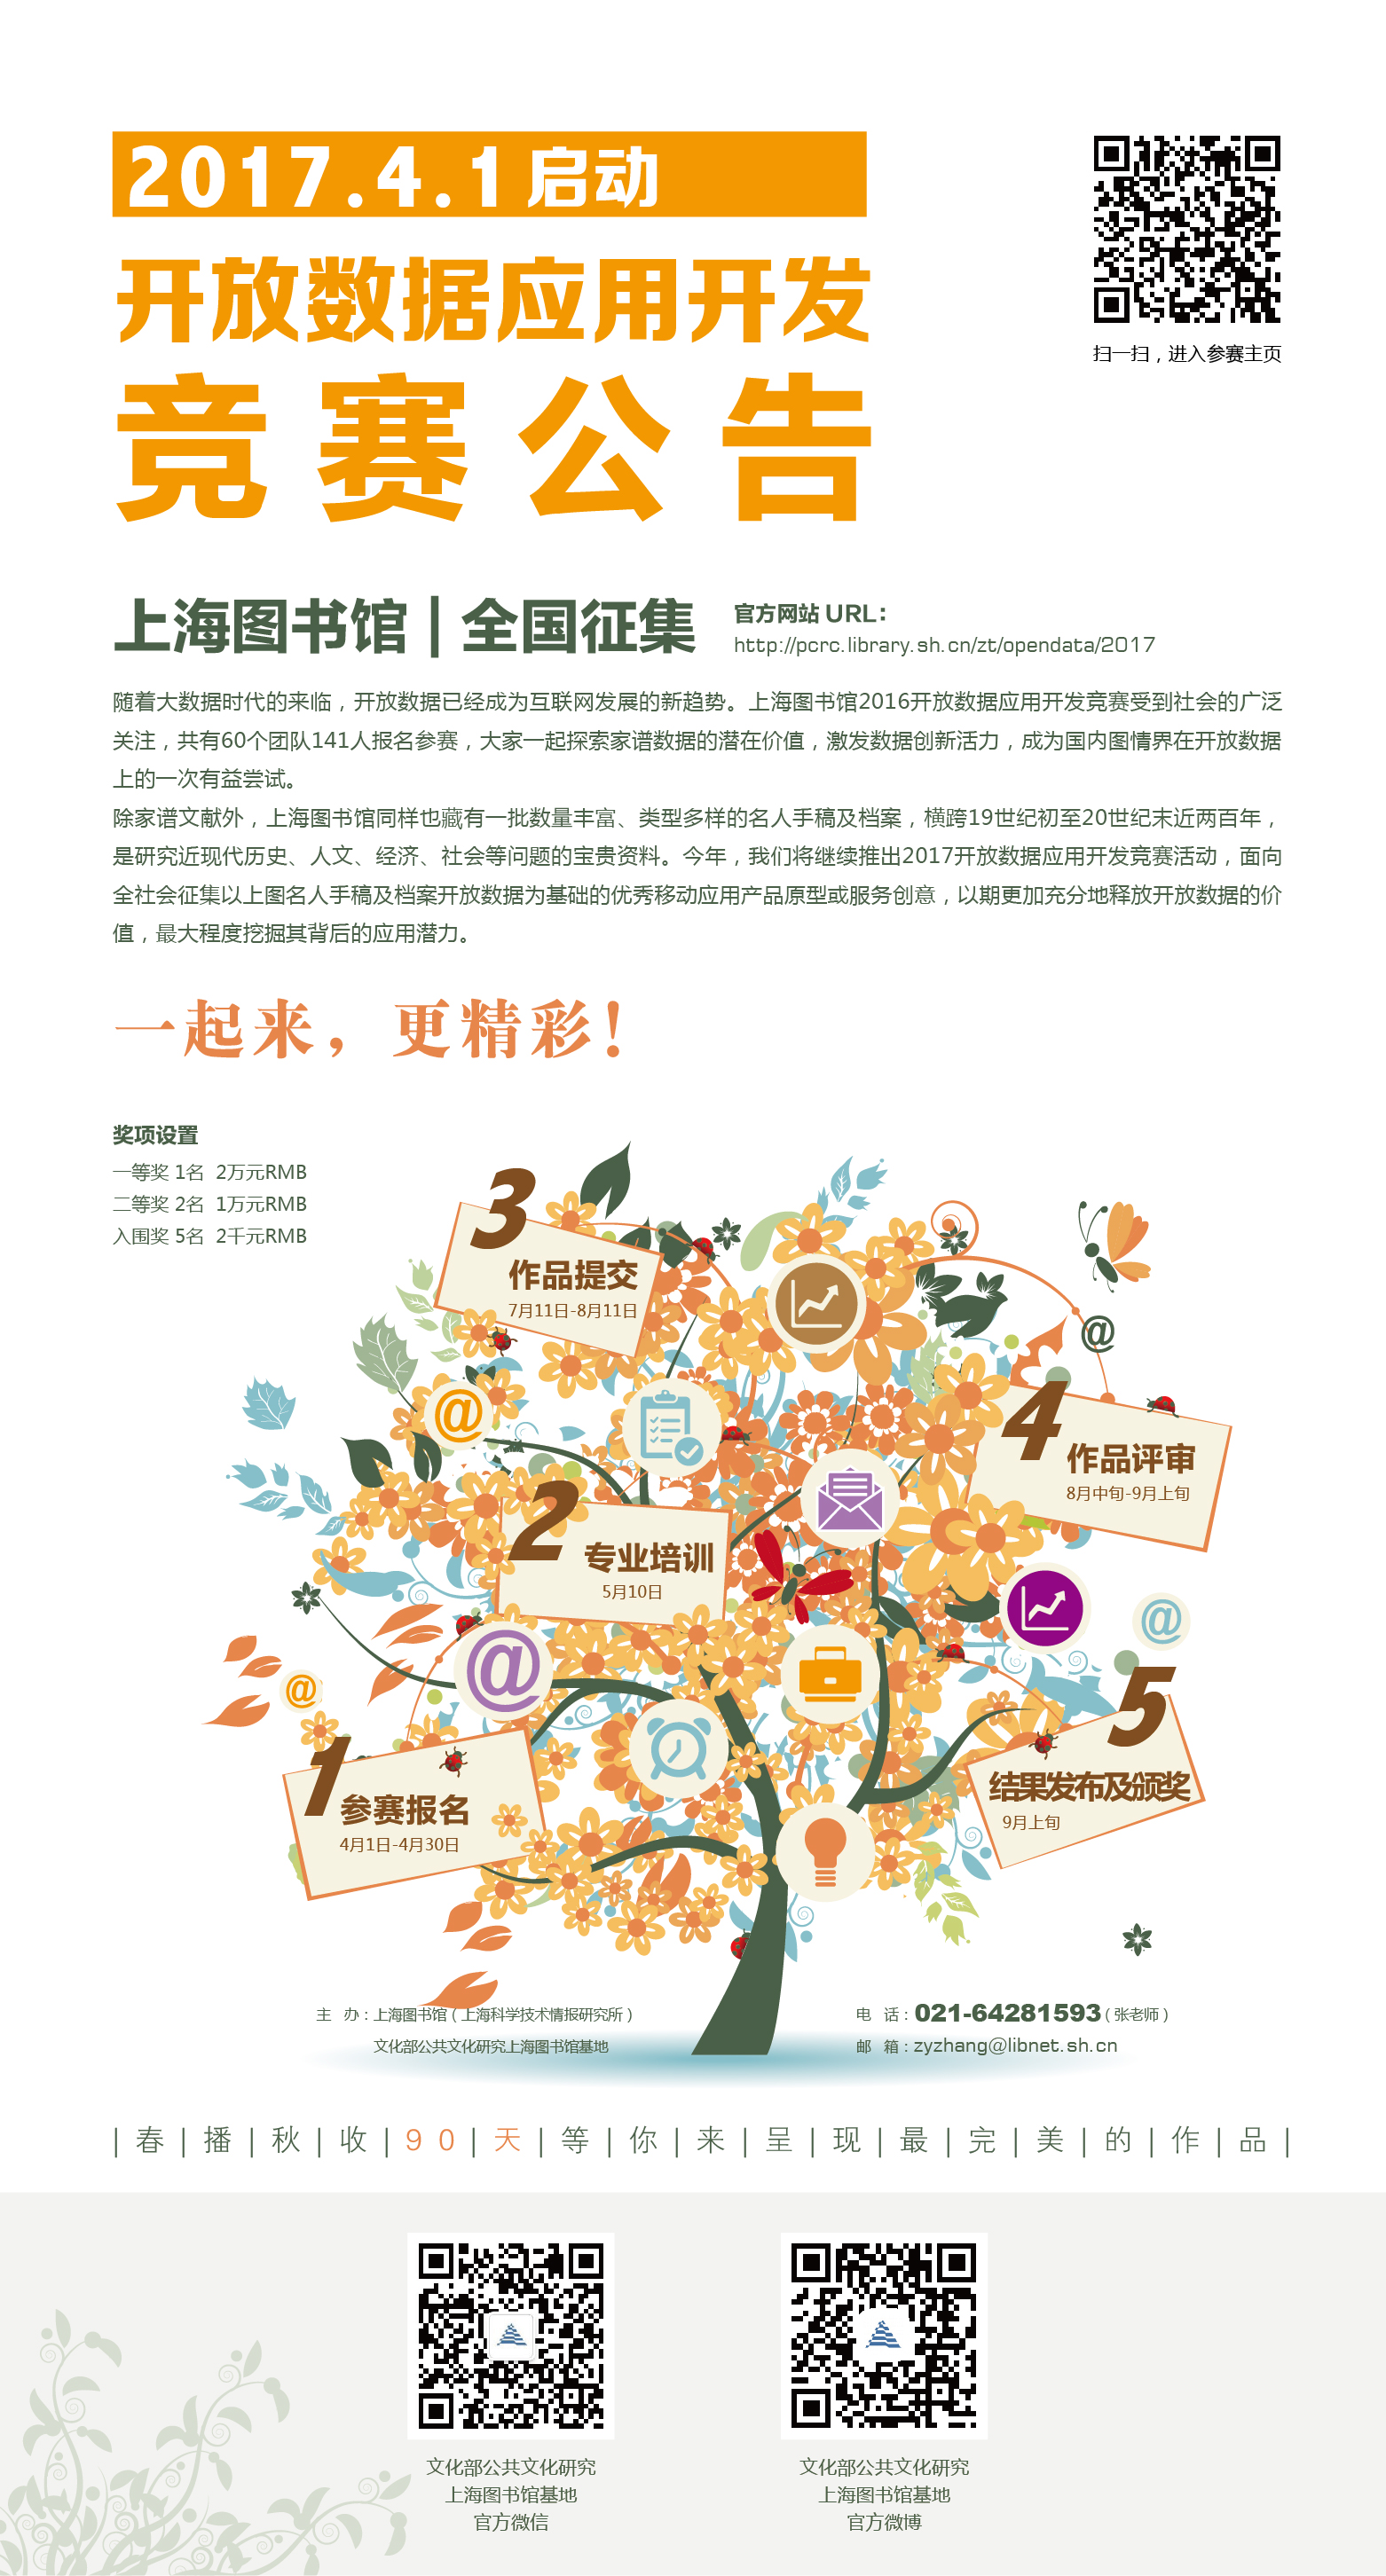 2017上海图书馆开放数据应用开发竞赛